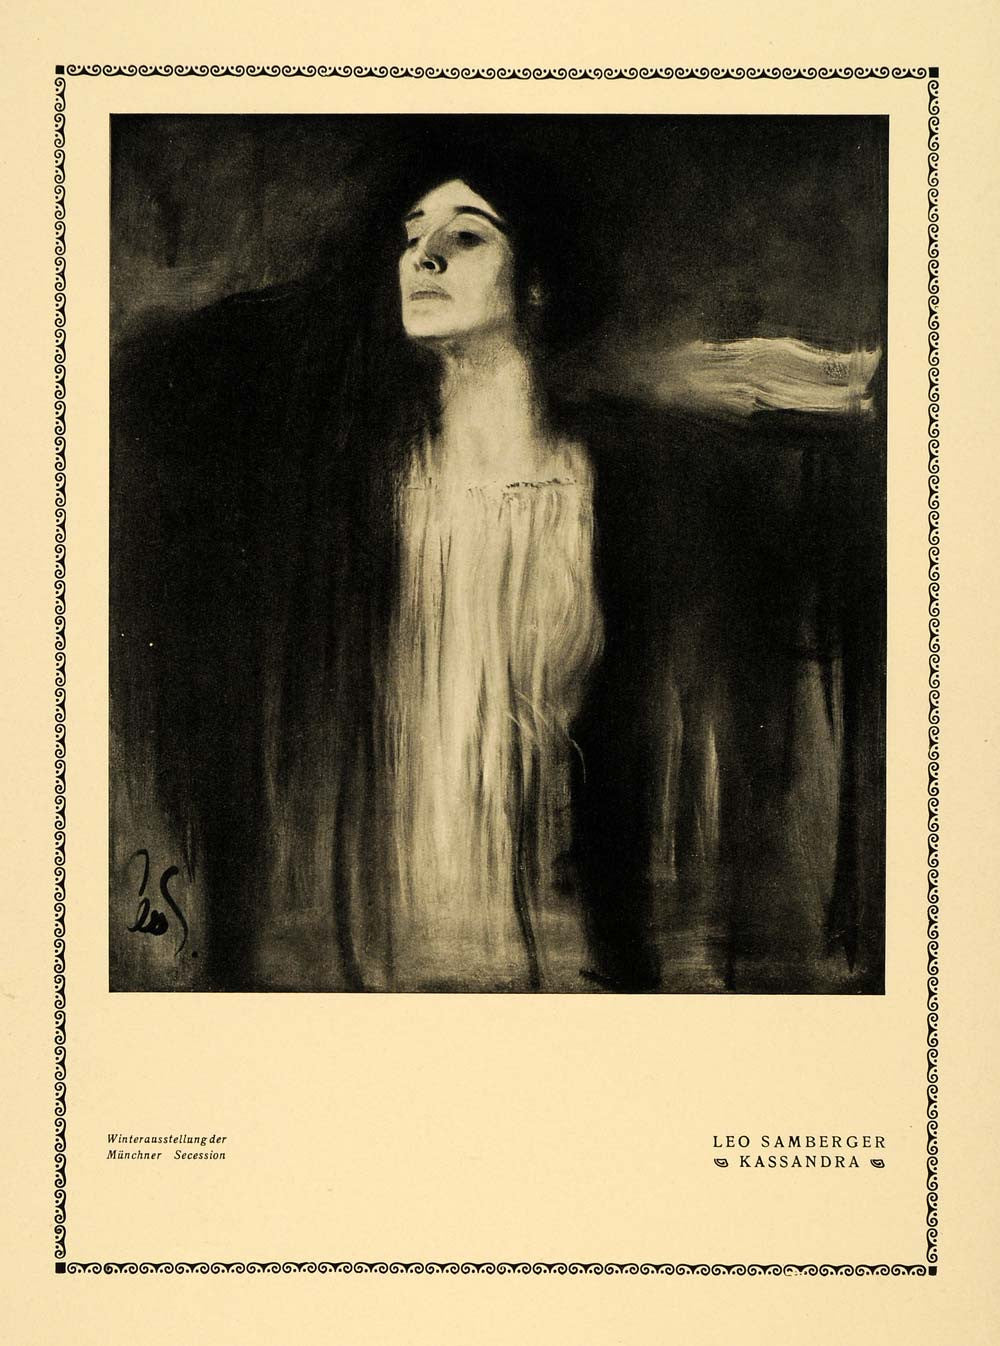 1913 Print Kassandra Paint Beauty Women Portrait Face Leo Samberger Art DKU1 - Period Paper
